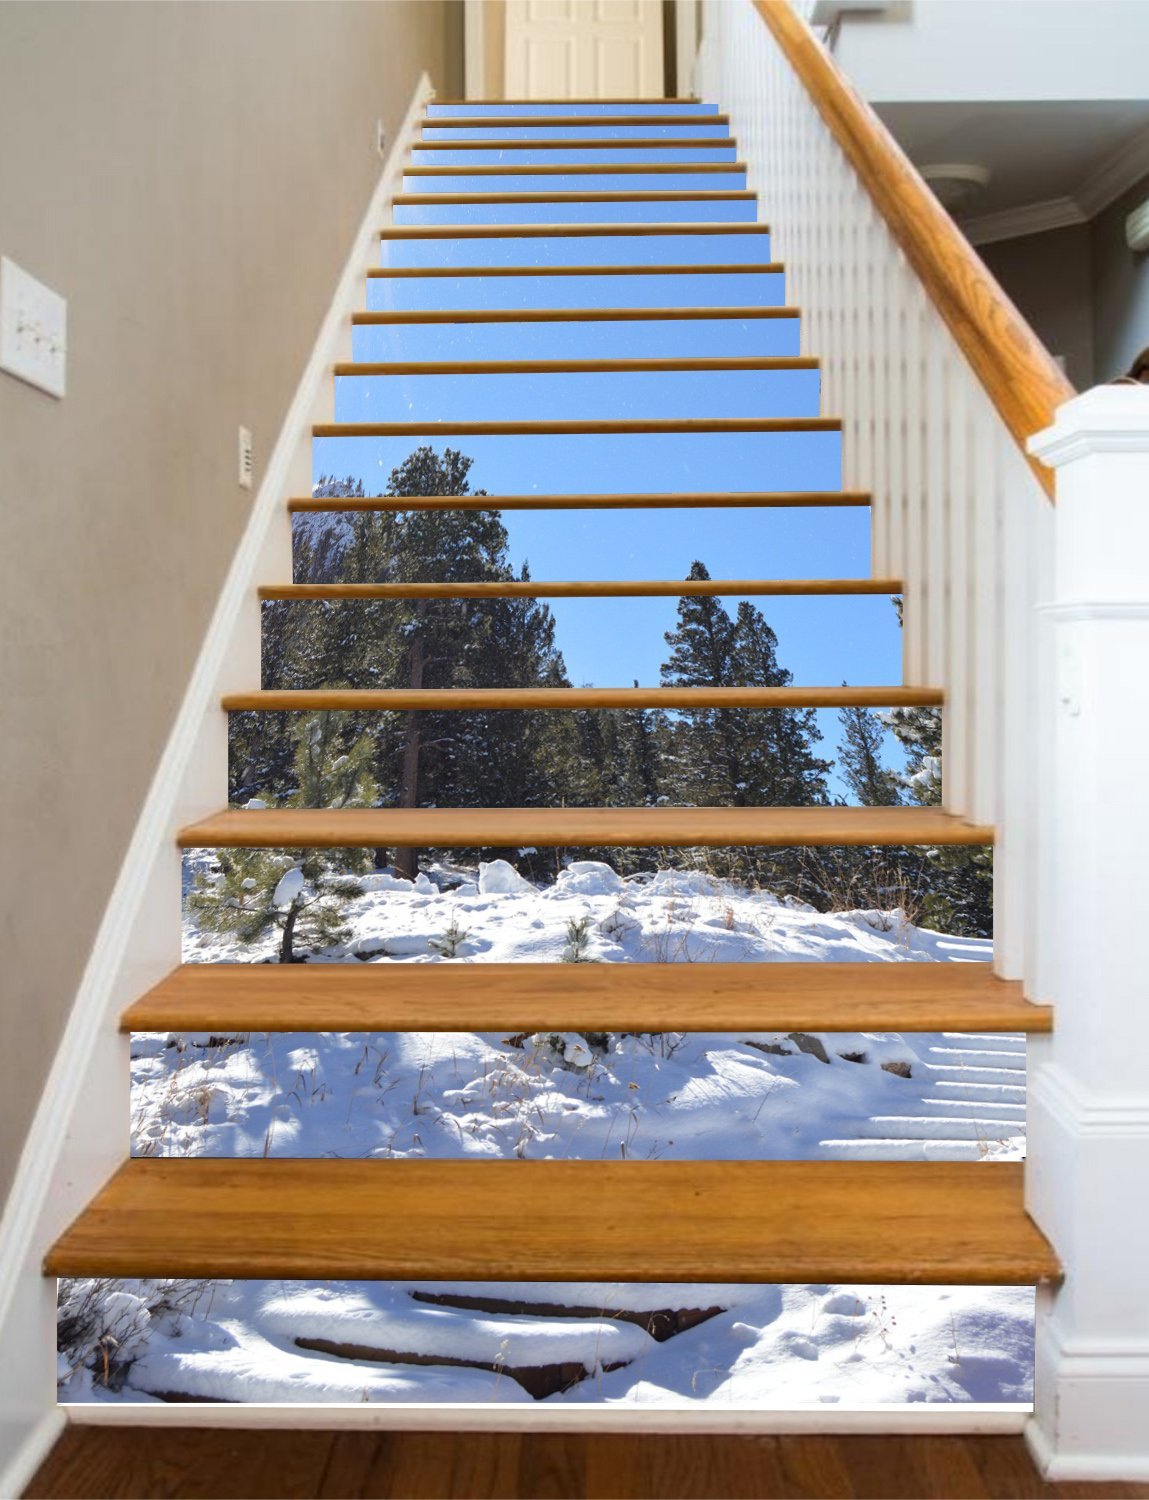 3D Accumulated Snow 695 Stair Risers Wallpaper AJ Wallpaper 